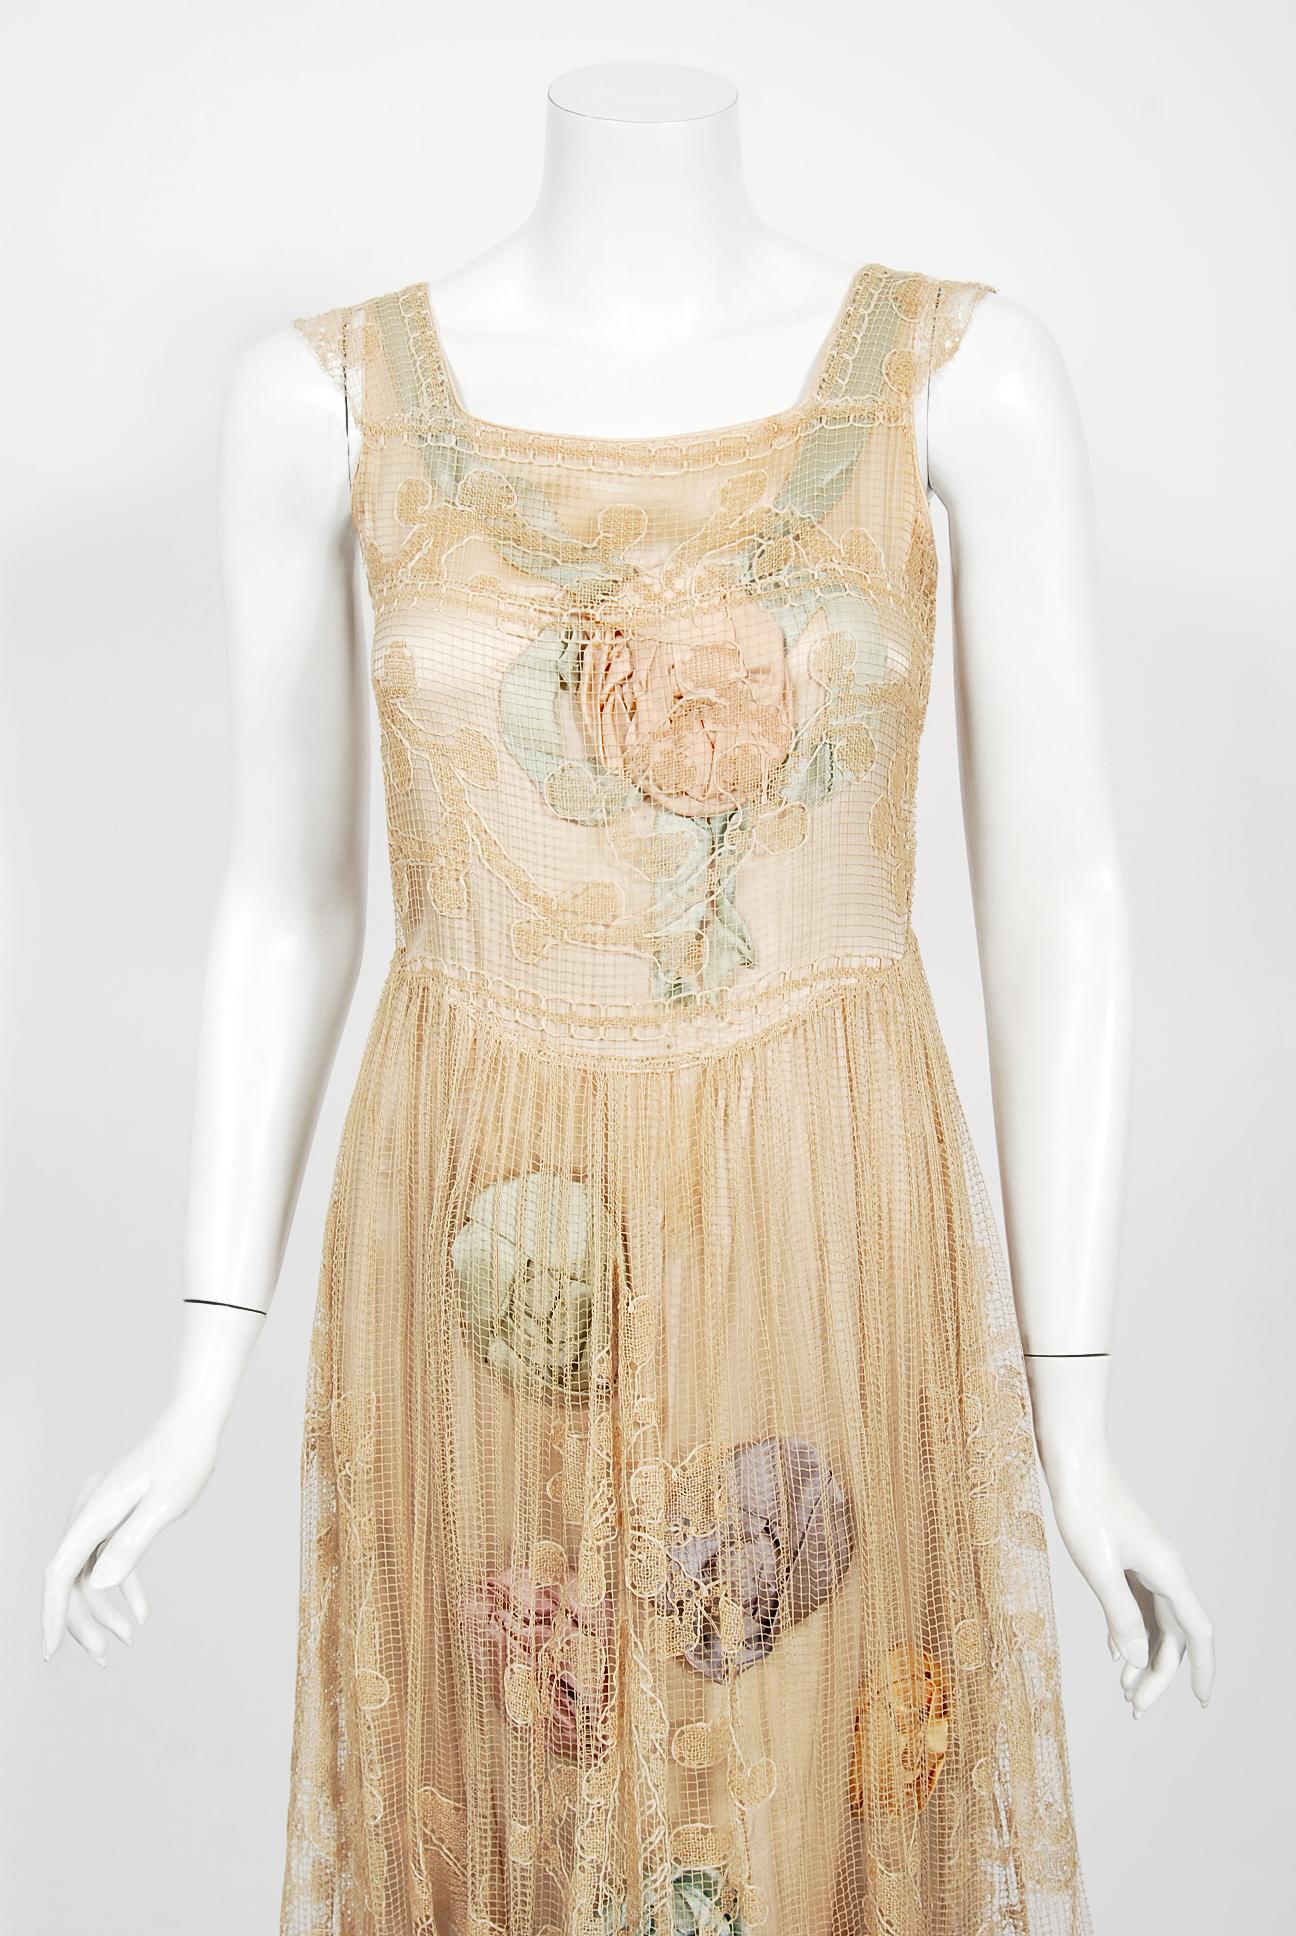 Une robe de danse époustouflante, de qualité muséale, datant du milieu des années 1920. Deux couches sont habilement conçues pour se compléter : une couche extérieure en dentelle fine avec un motif de feuillage sur un empiècement en crêpe de soie